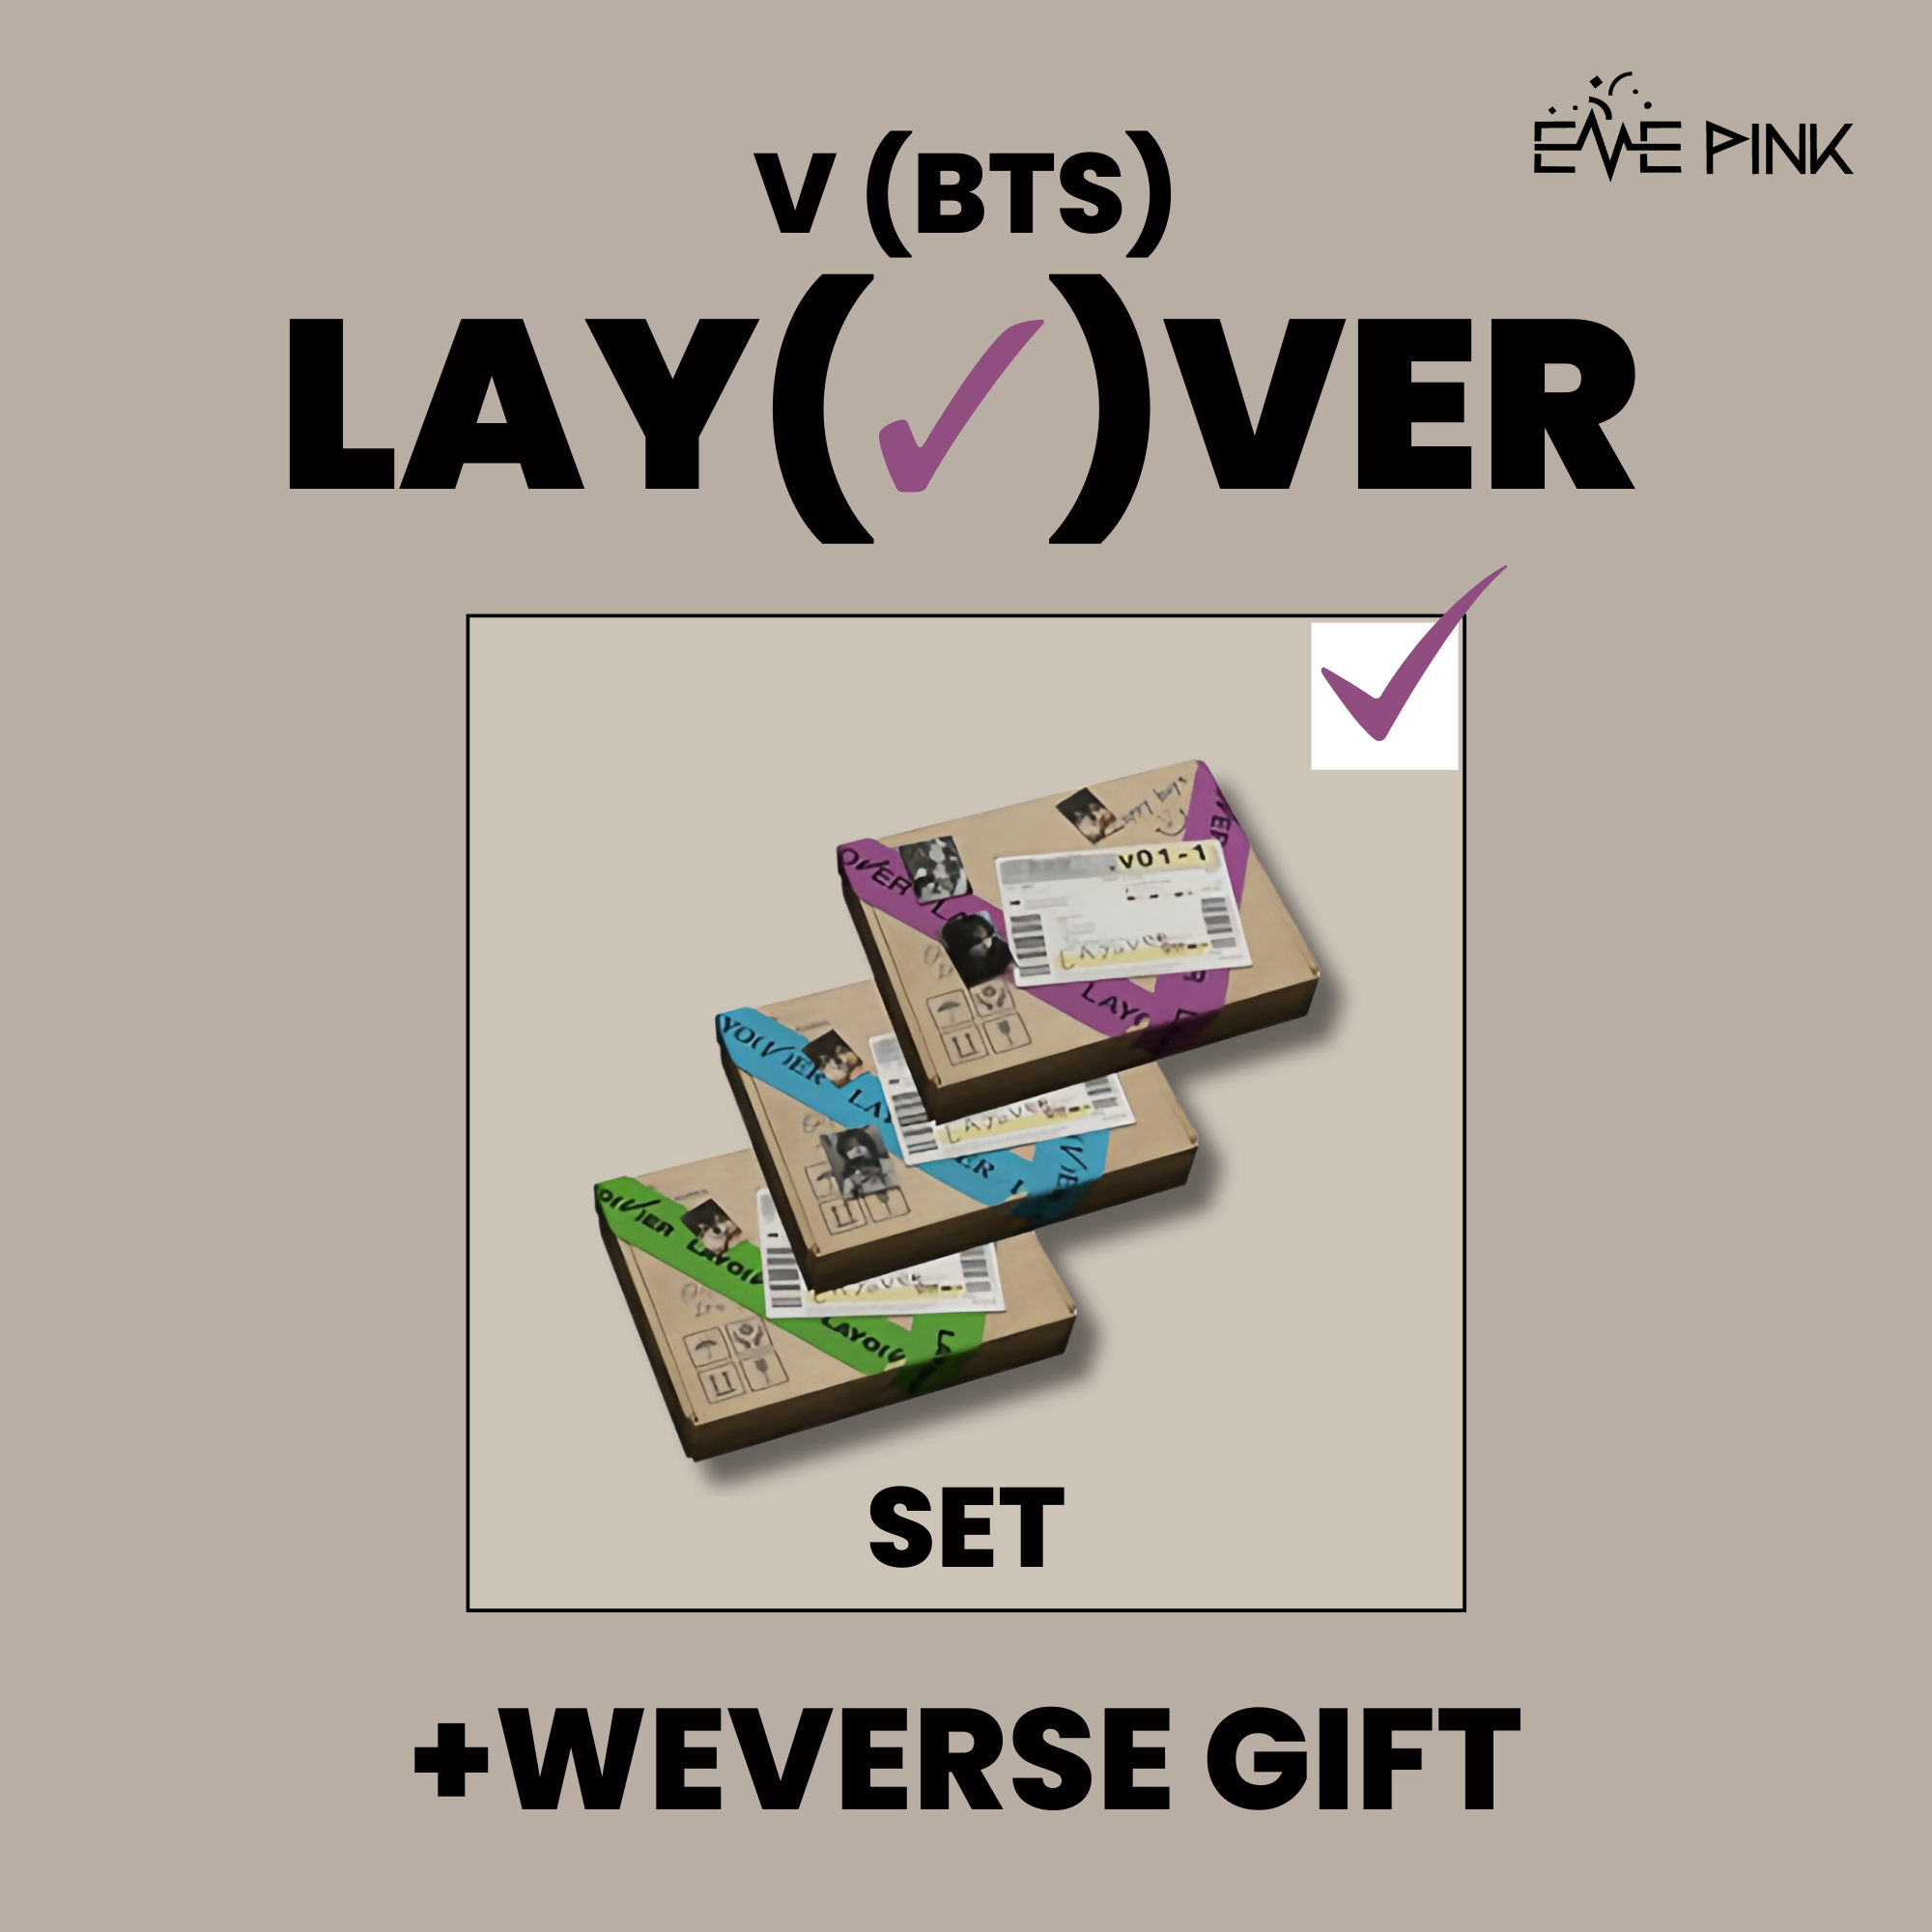 BTS V Album Layover Gift Box